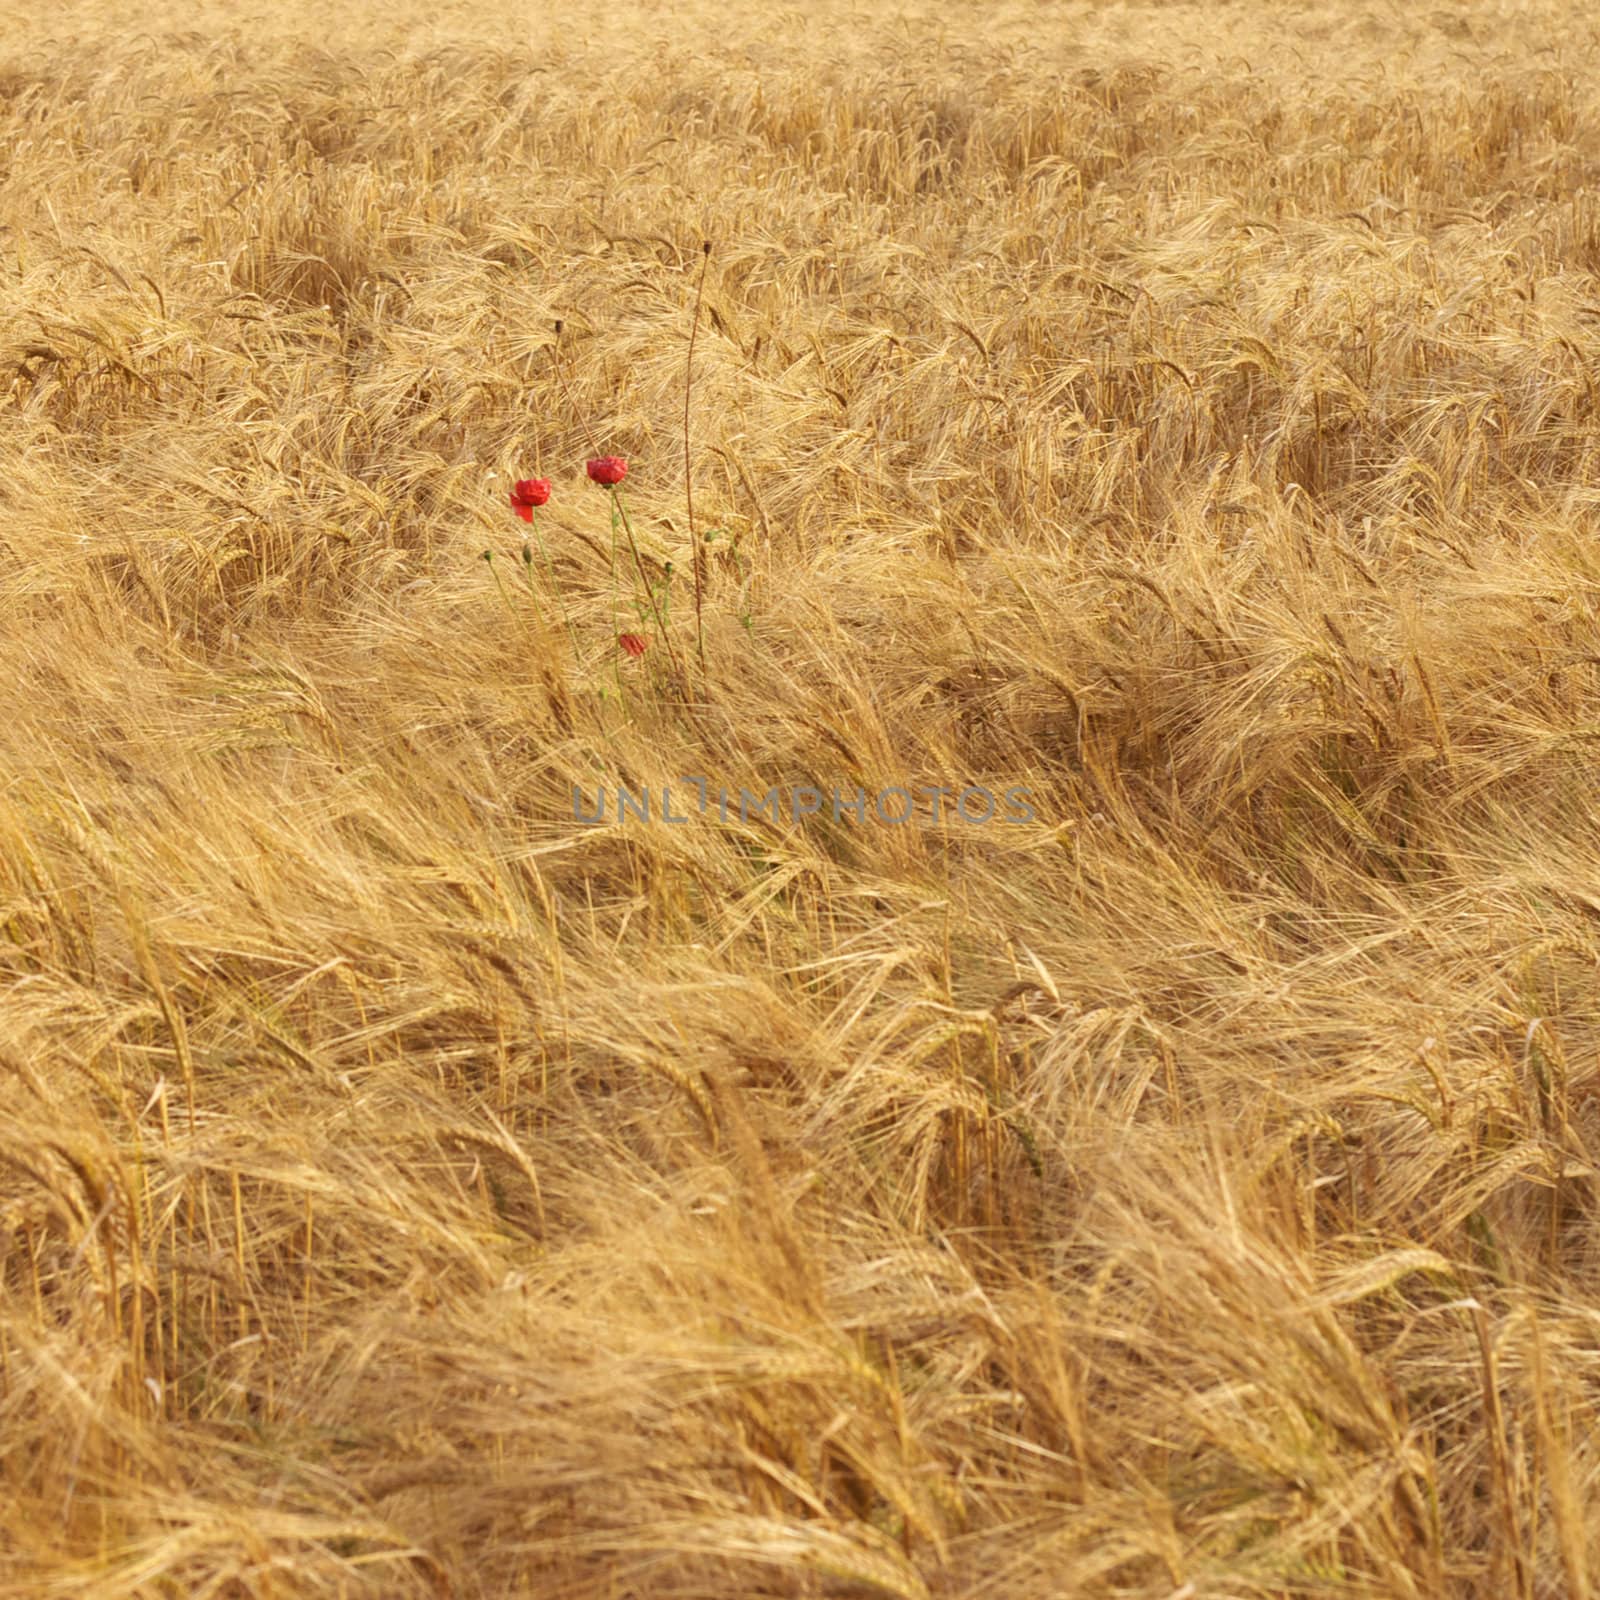 Ripe wheat field 2 by hospitalera